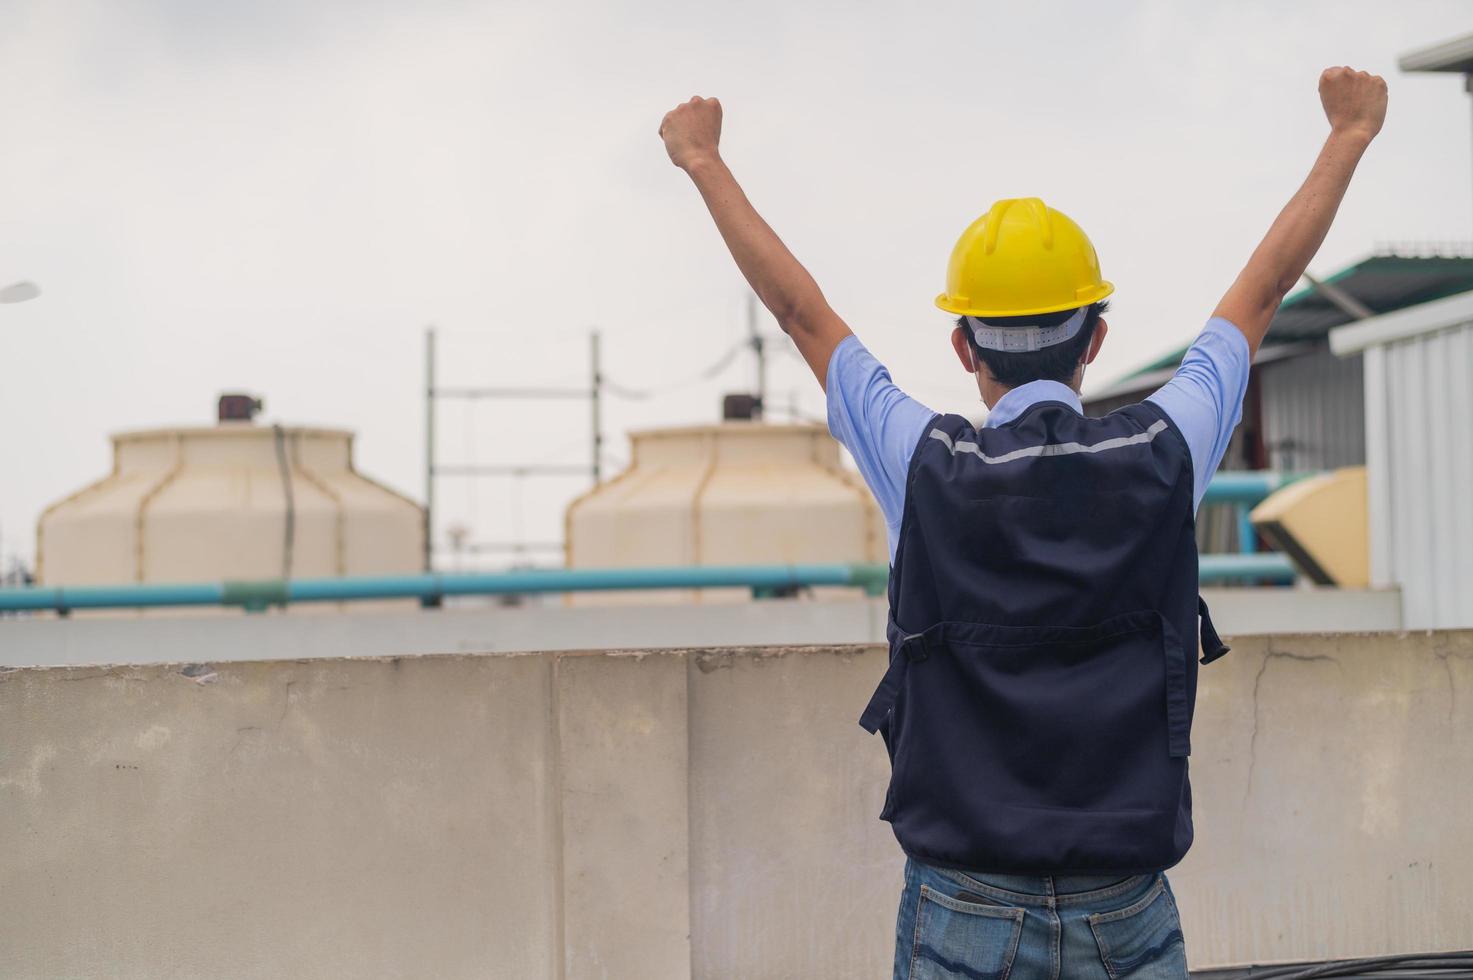 ingenjör som står på taket av produktionsbyggnaden visar engagemang och framgång foto